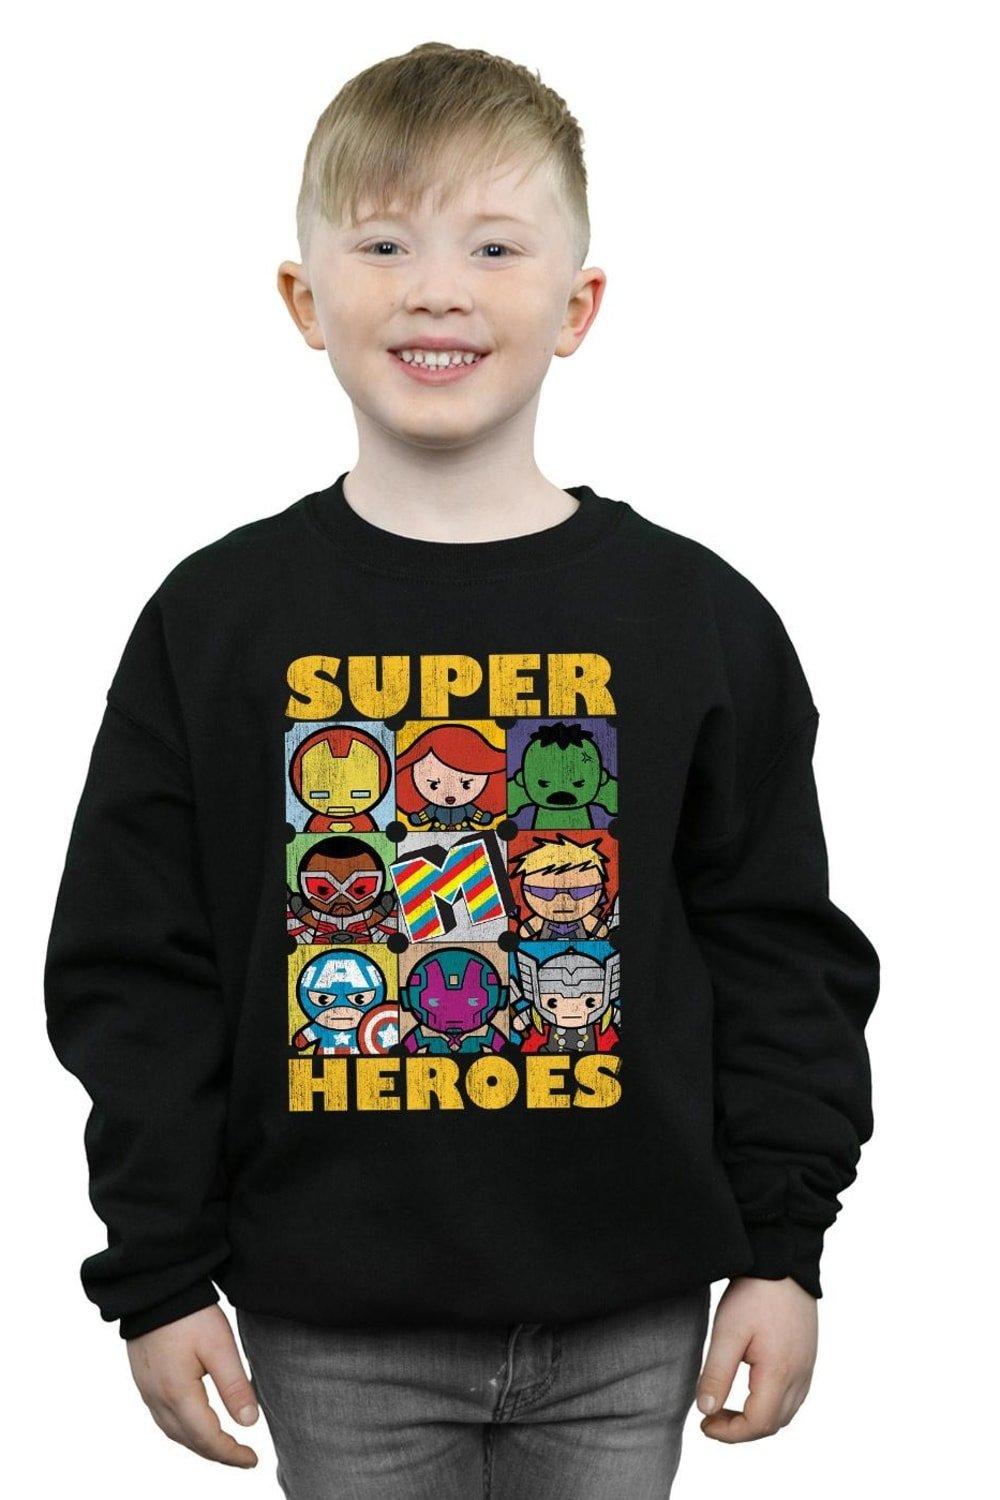 Kawaii Super Heroes Sweatshirt